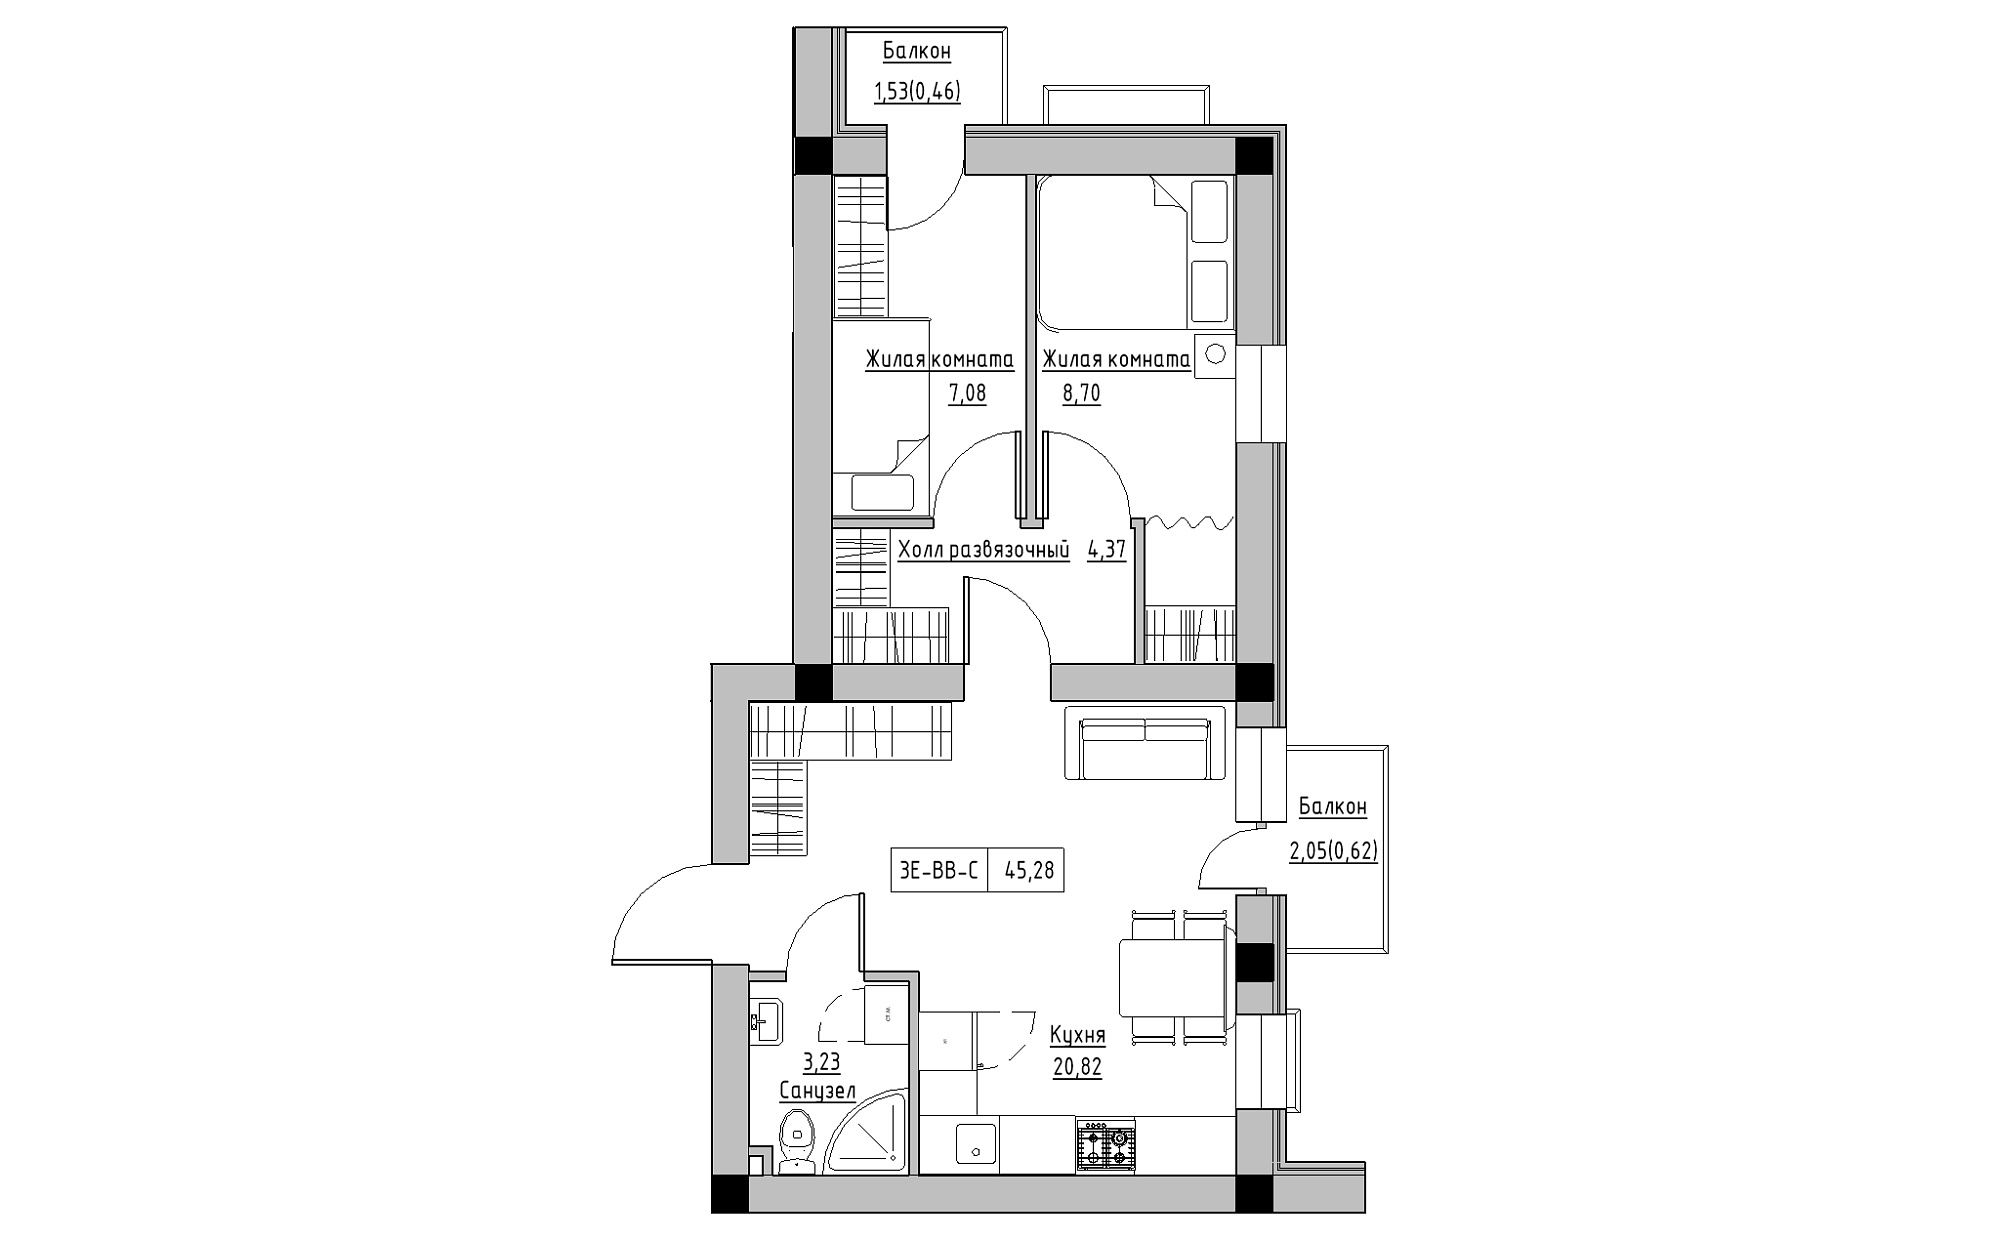 Планування 3-к квартира площею 45.28м2, KS-022-05/0011.